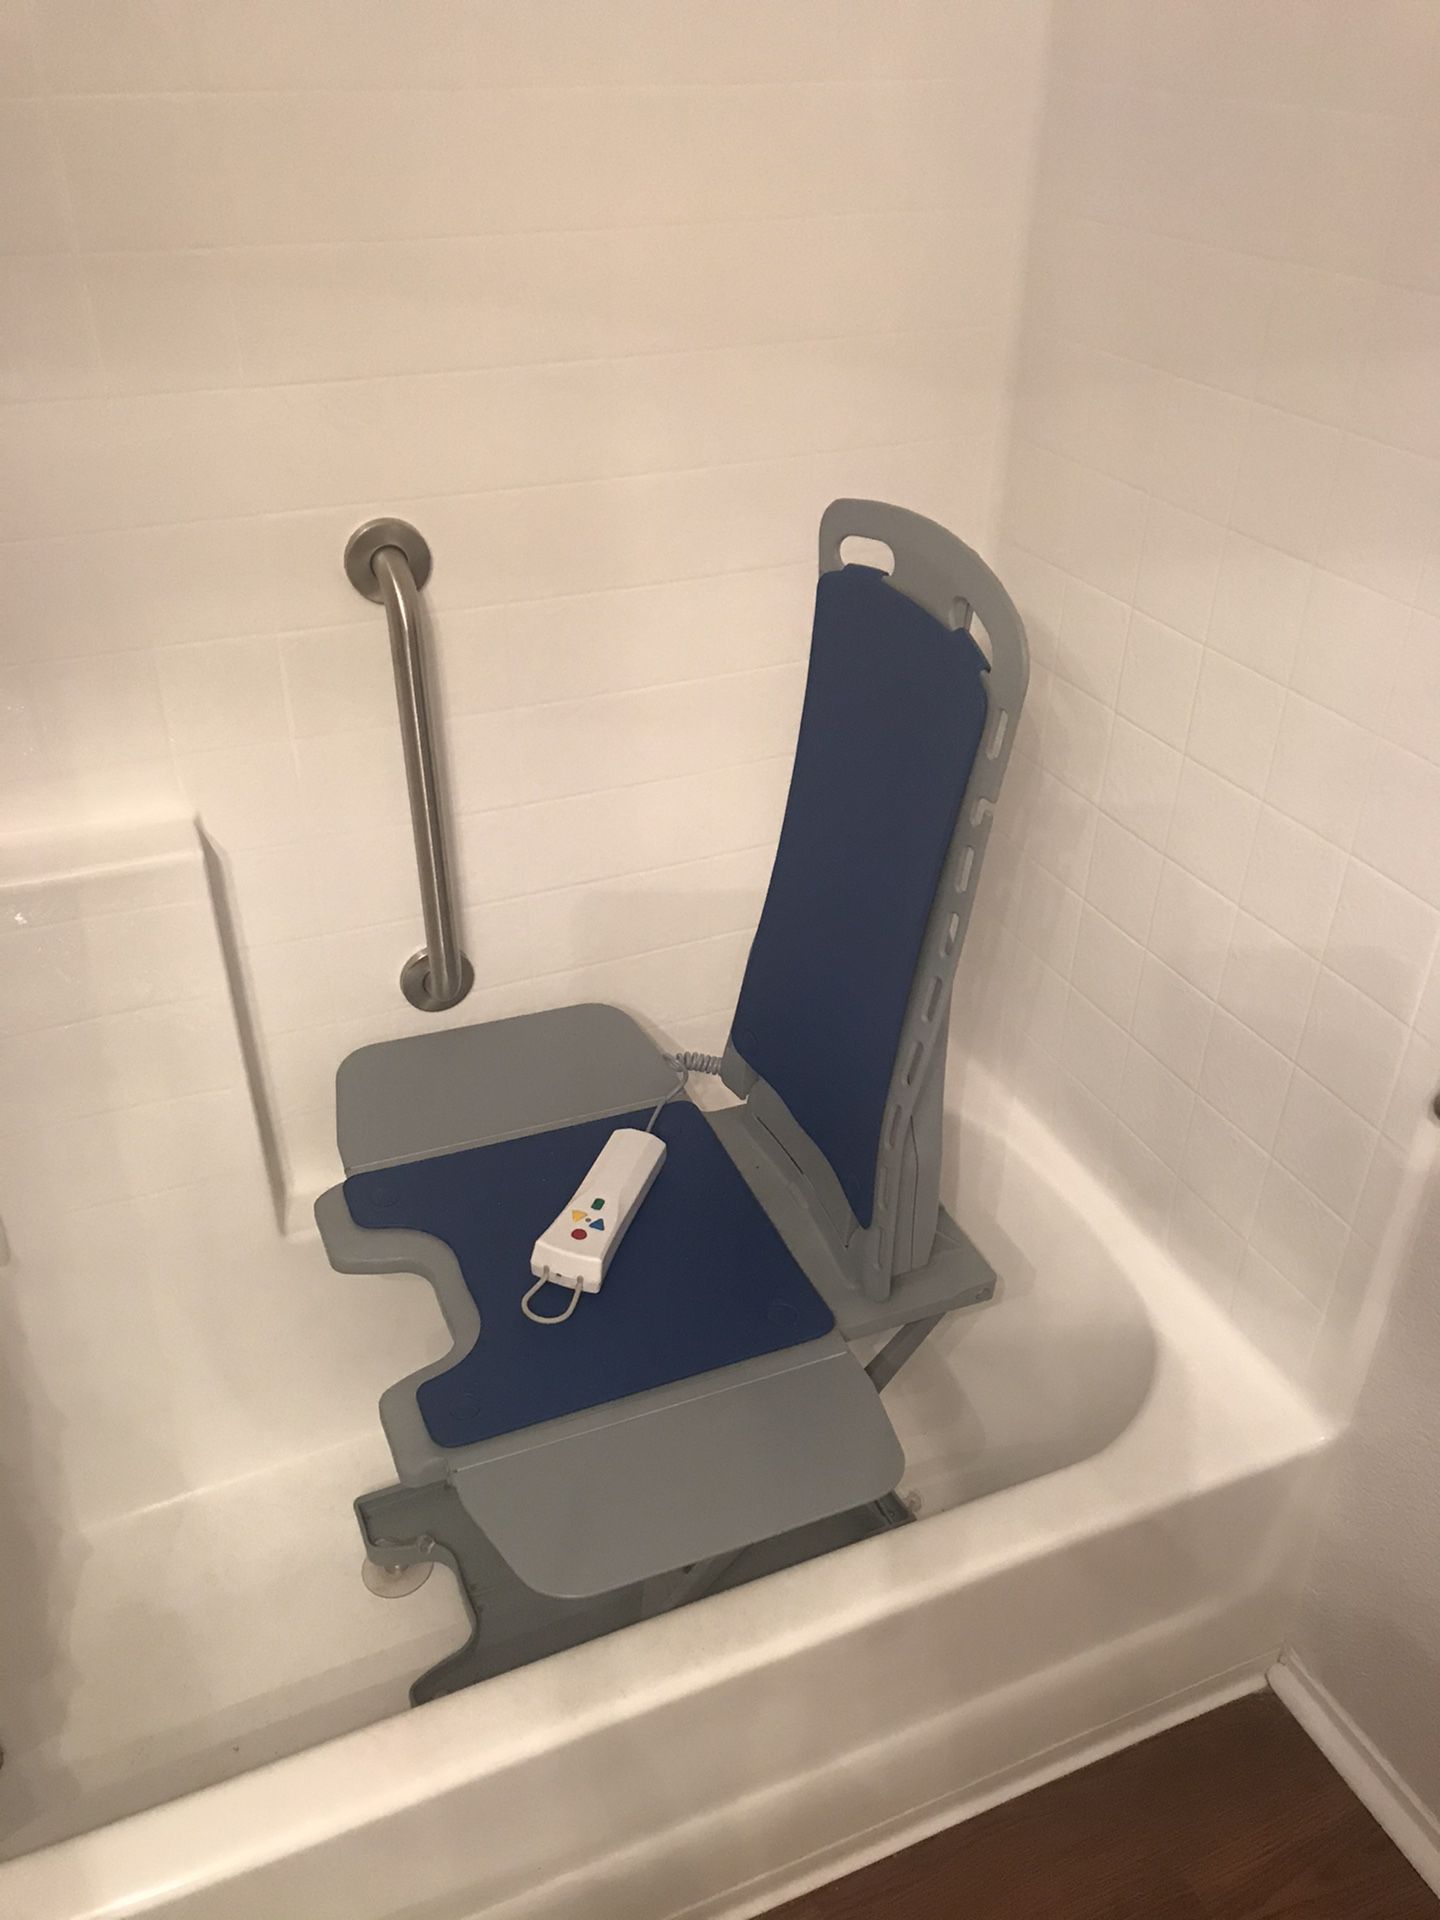 Handicap Lift “Bellavita Lift Assist” For Bathtub